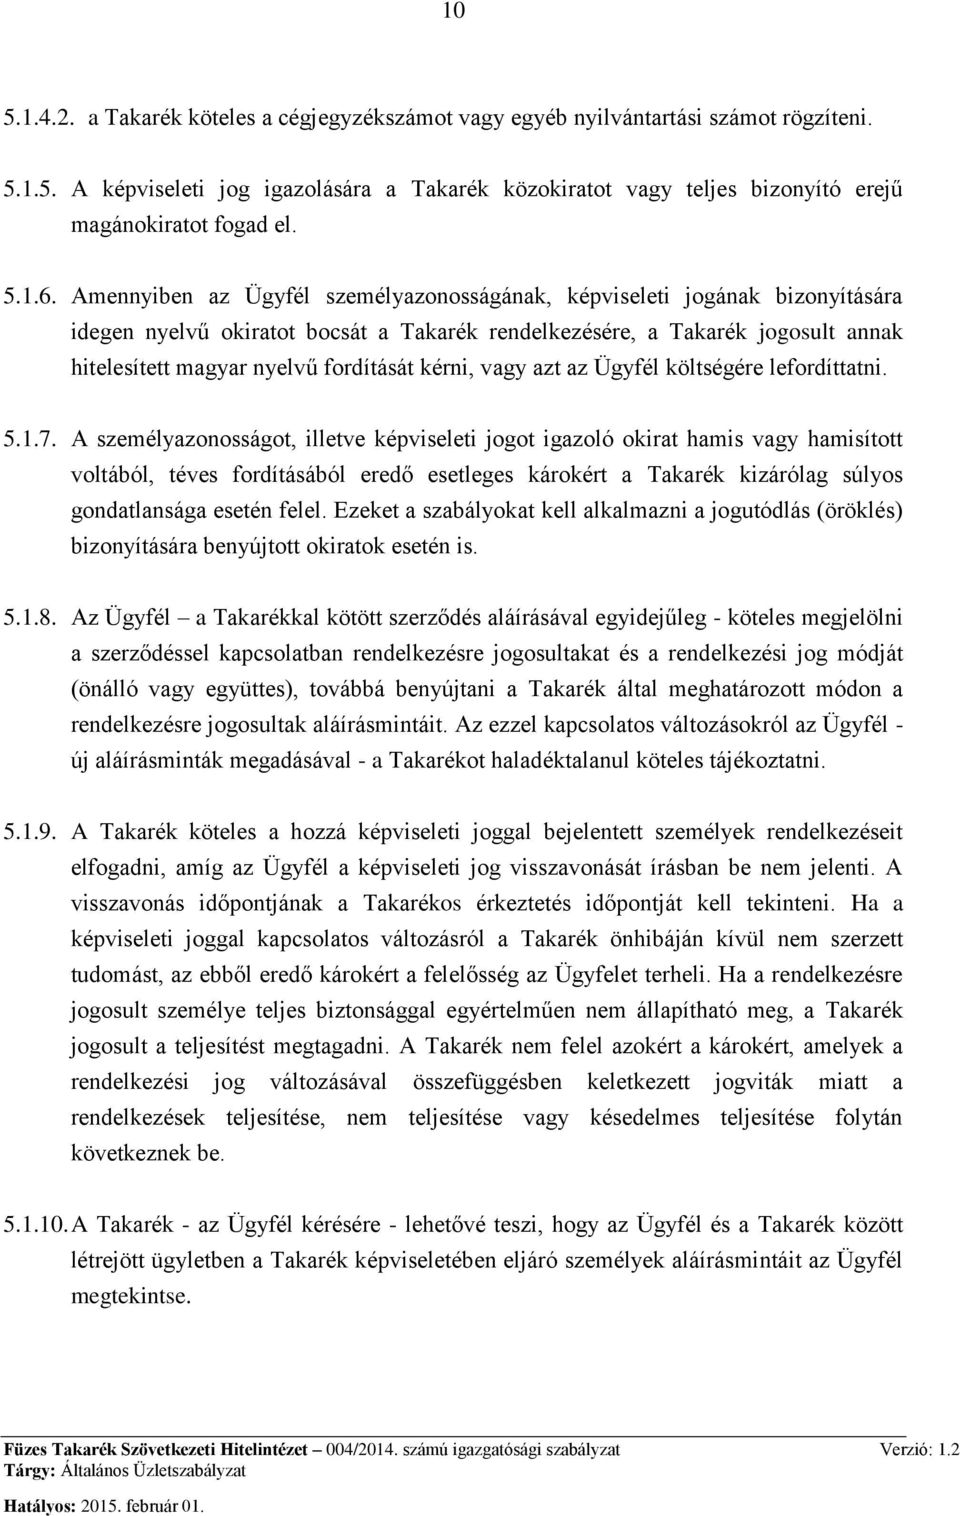 Amennyiben az Ügyfél személyazonosságának, képviseleti jogának bizonyítására idegen nyelvű okiratot bocsát a Takarék rendelkezésére, a Takarék jogosult annak hitelesített magyar nyelvű fordítását